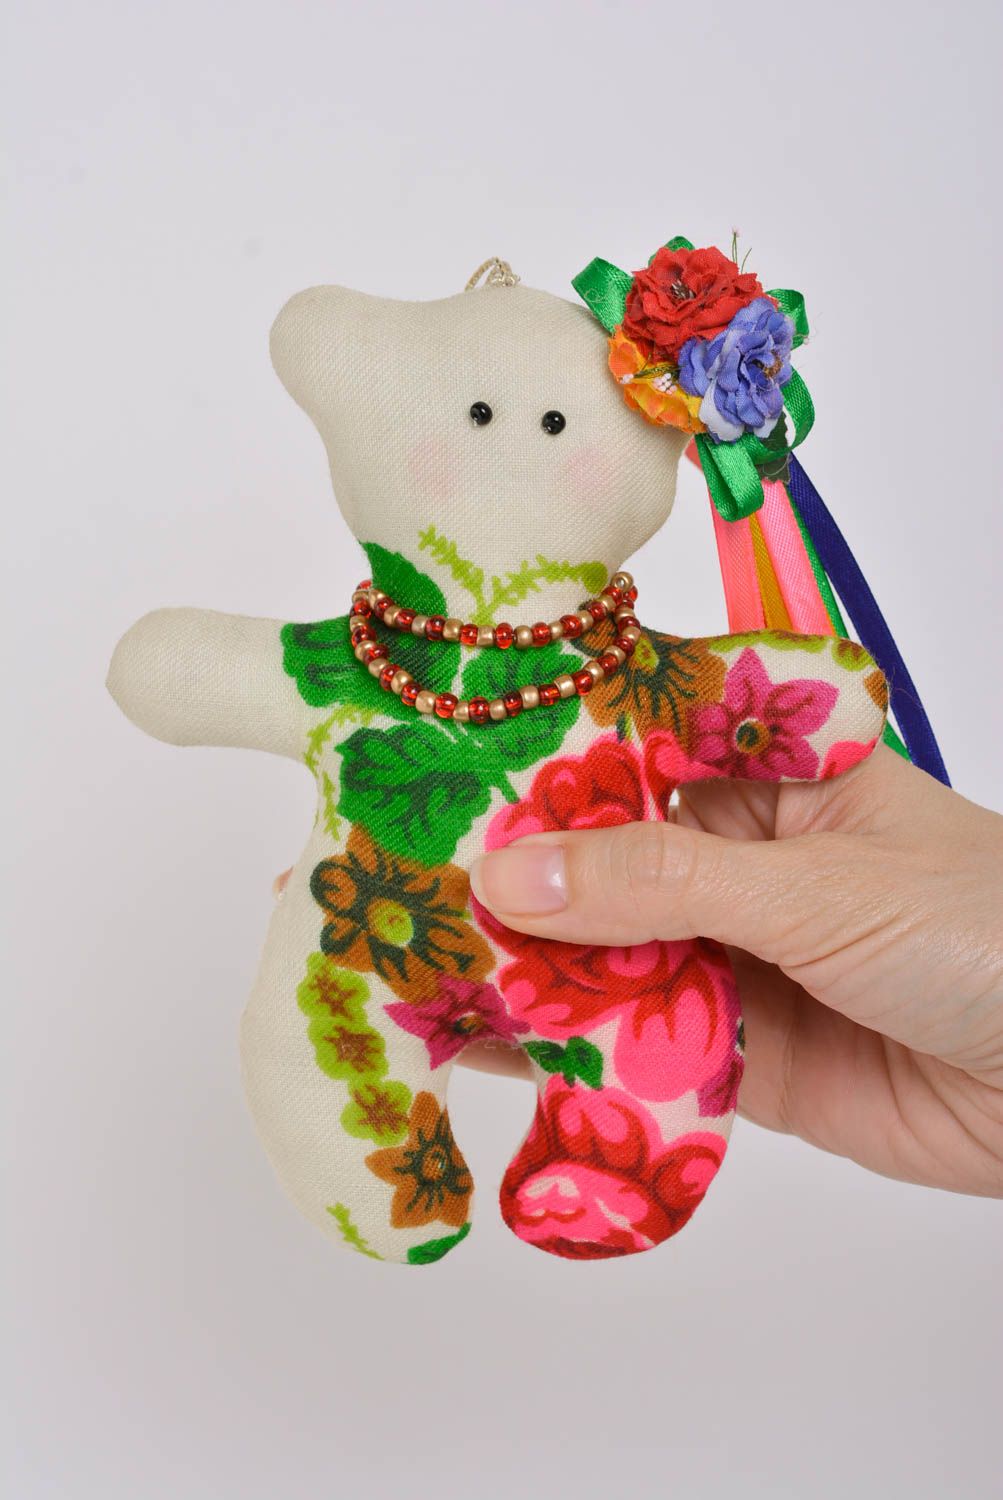 Joli jouet mou en tissu fait main en forme d'ourse sympa avec fleurs cadeau photo 4